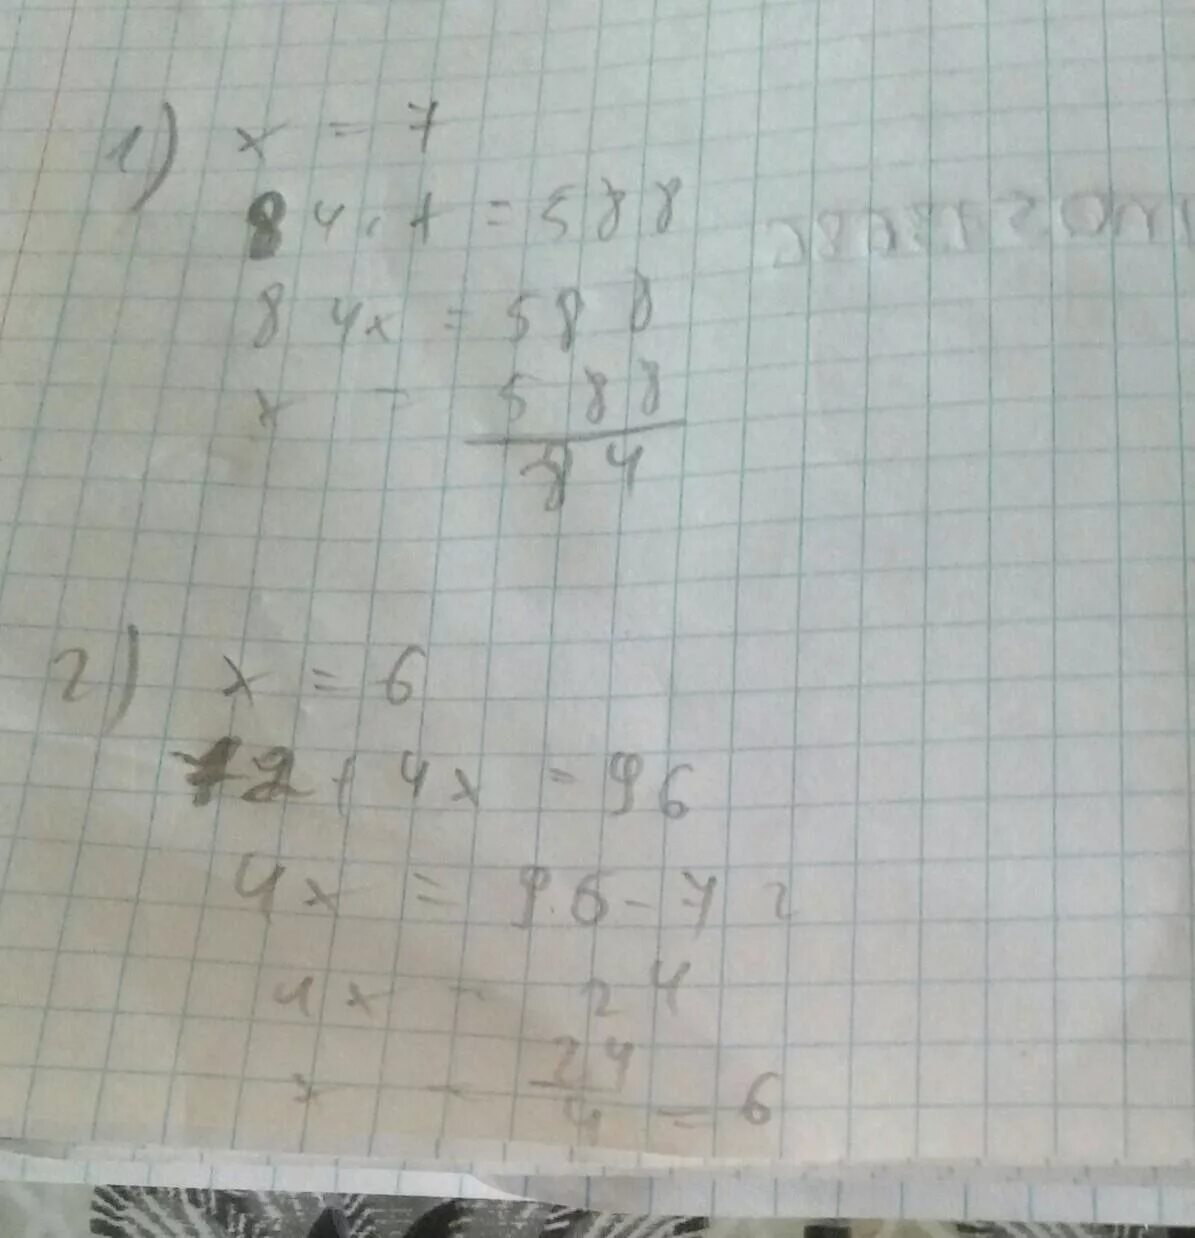 3x 18x 0. Решение уравнений 84:х=2•2. Решение уравнения 2,08-x=1,84. Уравнение 84:x=14. Уравнения 0,084:(6,7-x)=1,2.